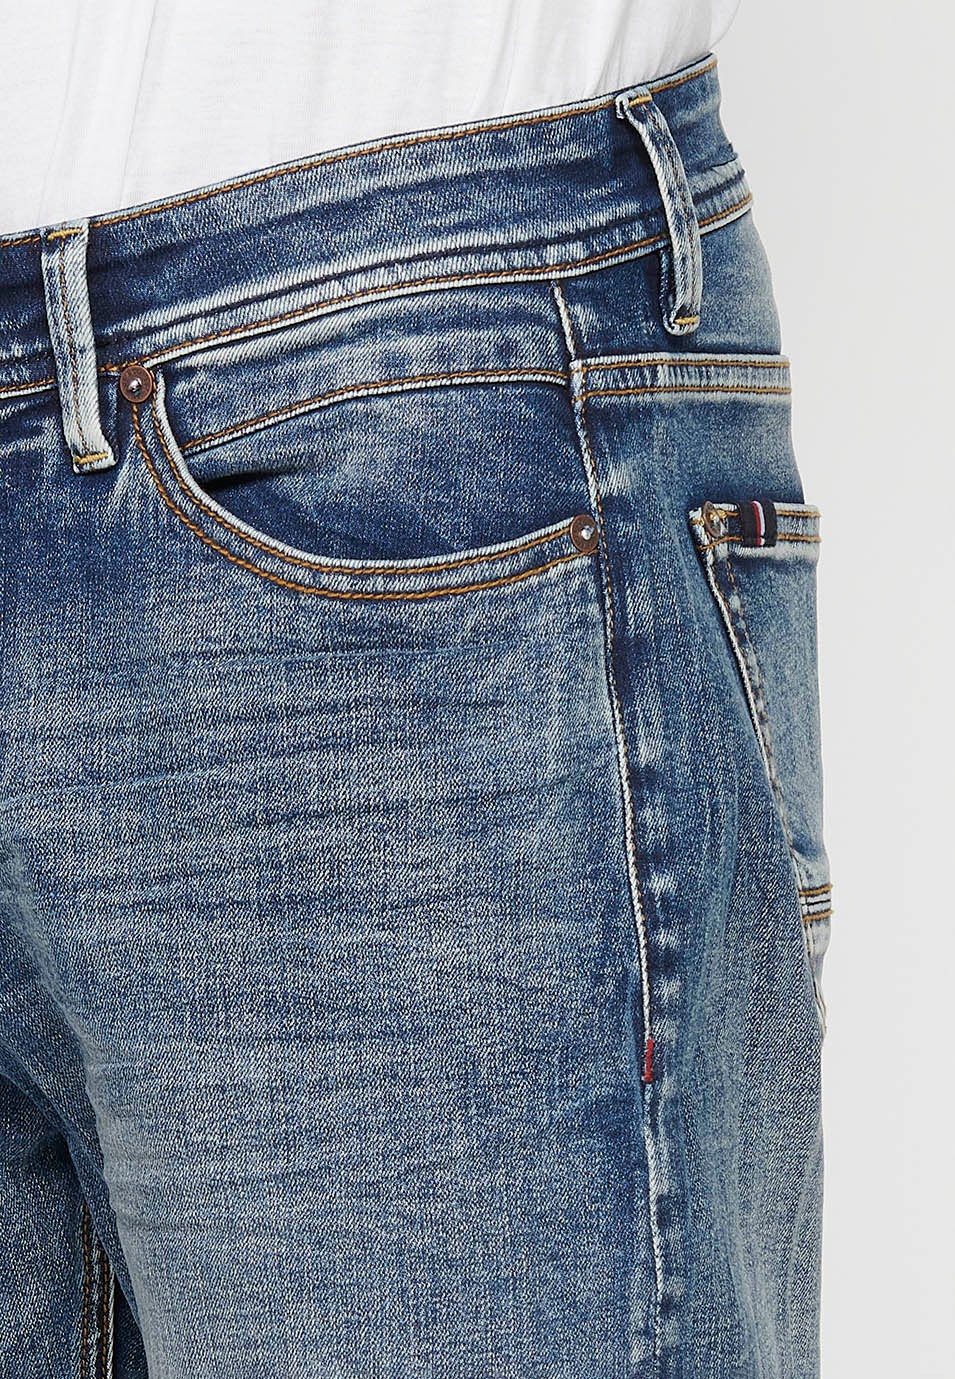 Pantalón largo jeans chino comfort fit con Cierre delantero con cremallera y botón de Color Azul para Hombre